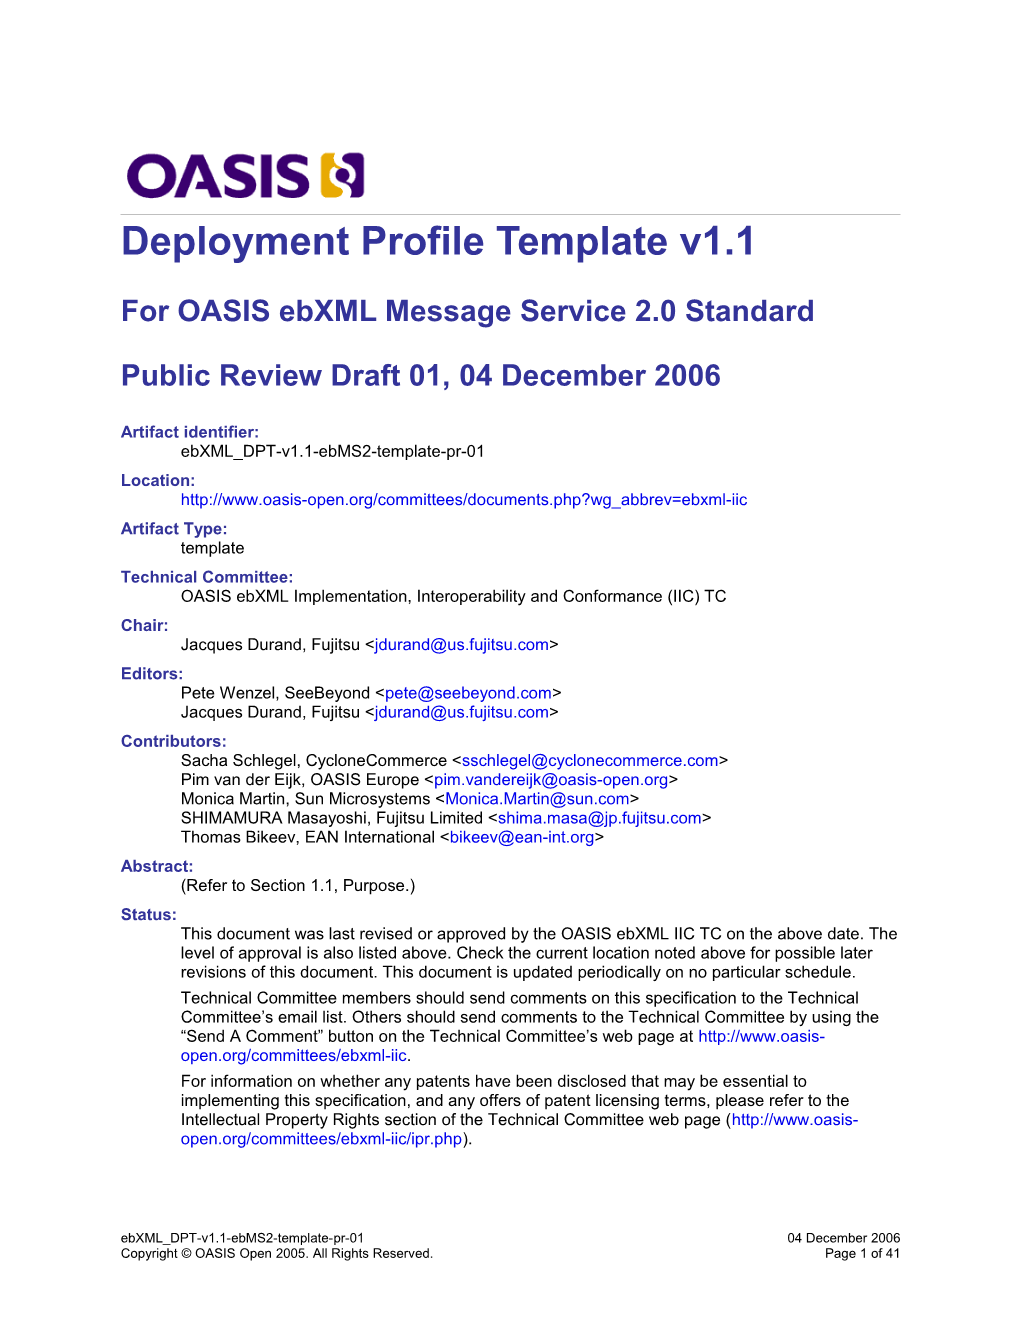 For OASIS Ebxml Message Service 2.0 Standard